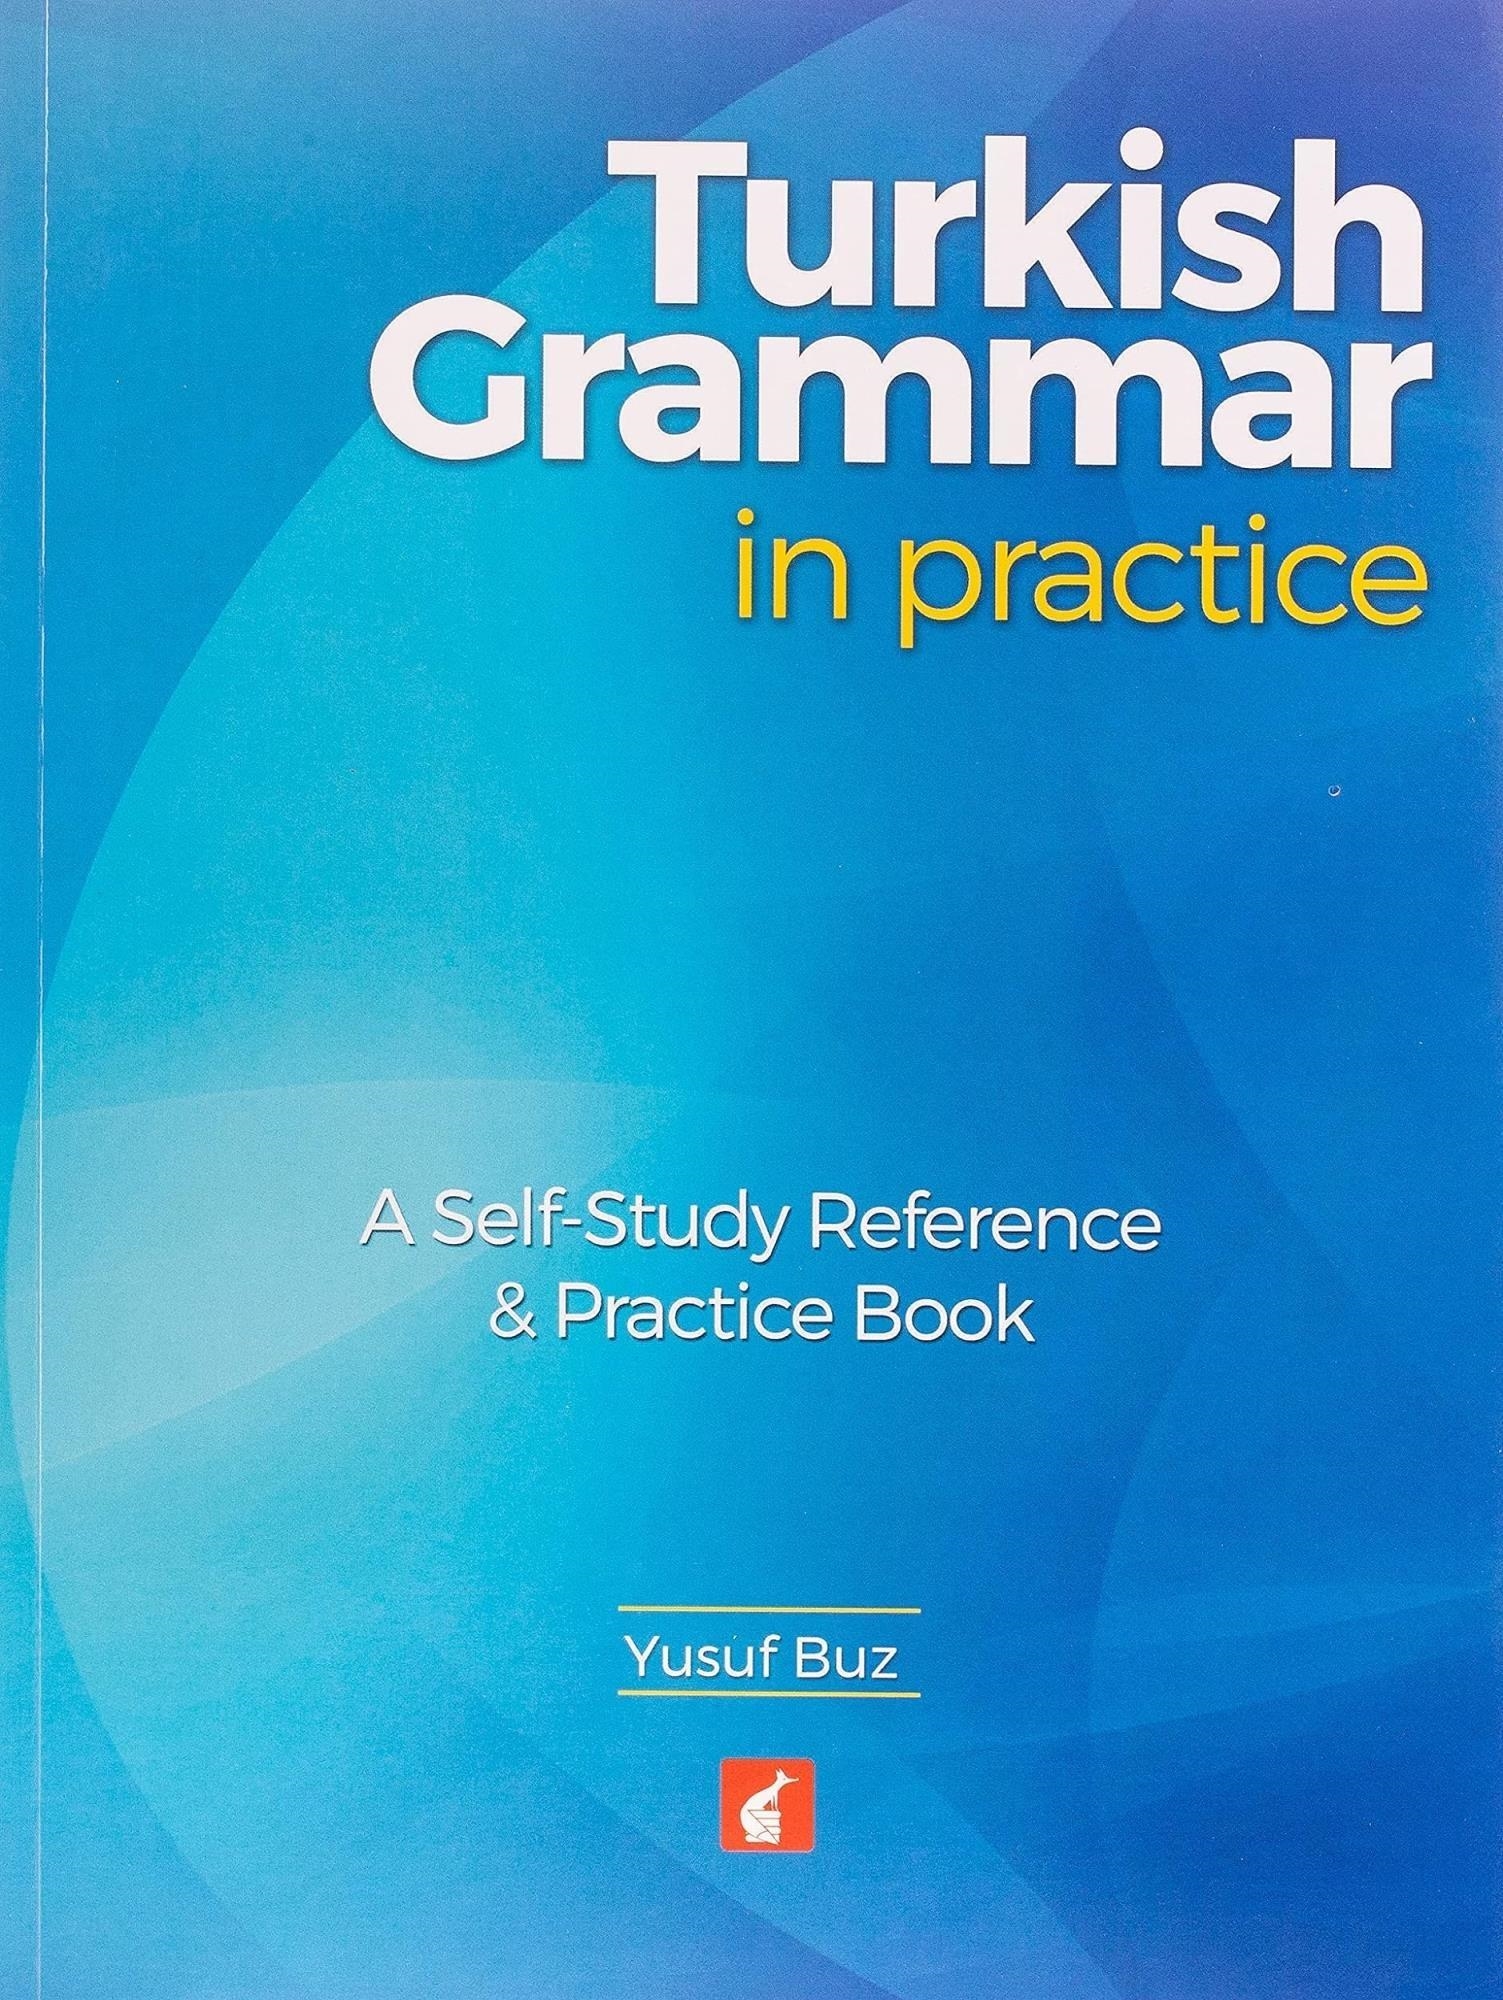 LIbri UK/US Buz, Yusuf - Turkish Grammar In Practice - A Self-Study Reference & Practice Book NUOVO SIGILLATO, EDIZIONE DEL 11/01/2016 SUBITO DISPONIBILE